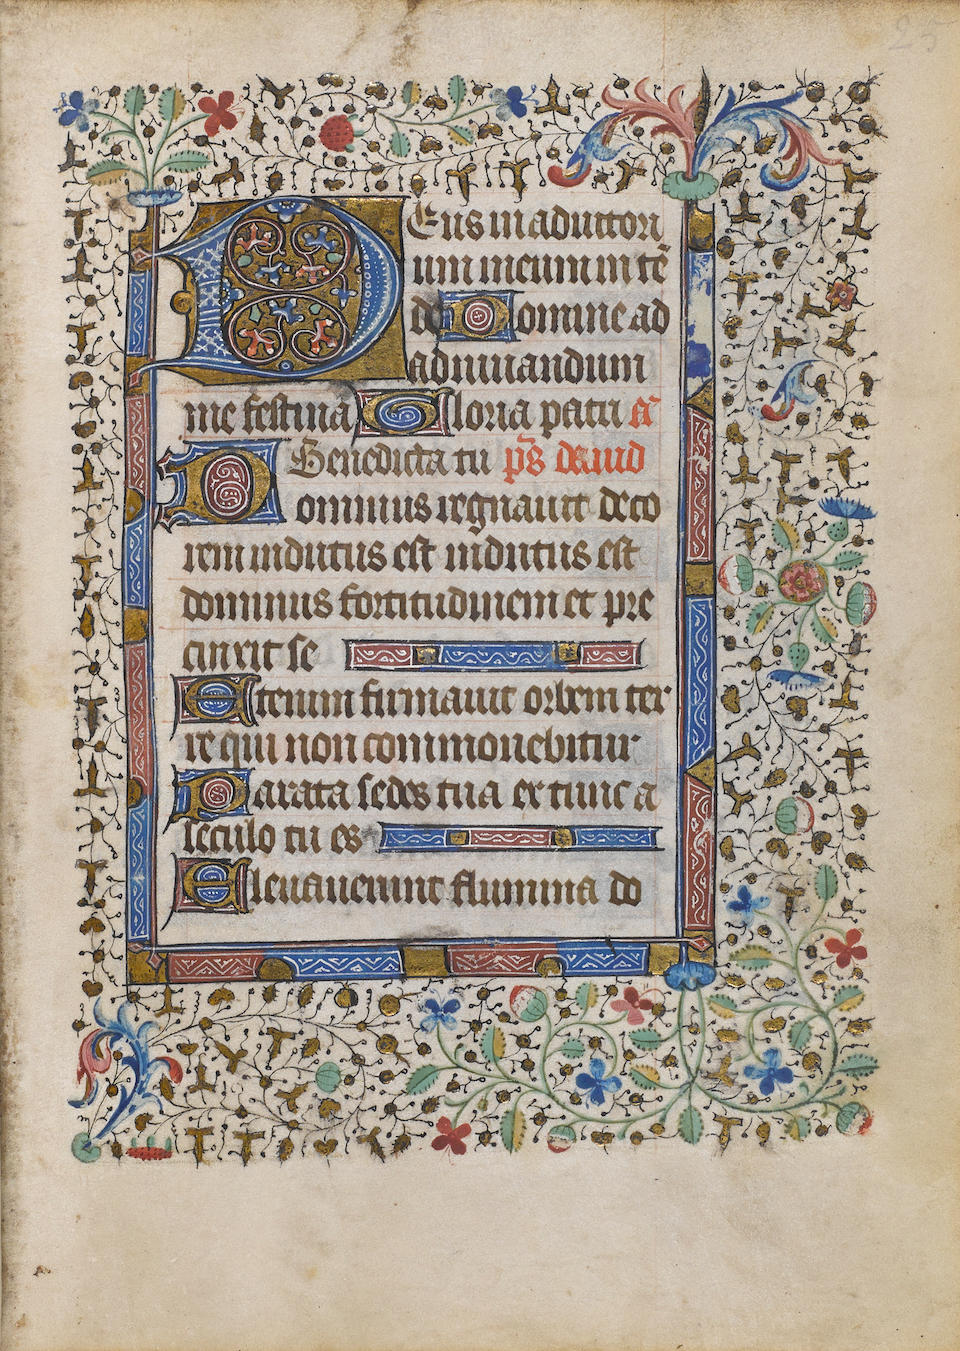 HORAE. Illuminated manuscript on vellum, Book of Hours in Latin, Use of Paris [Paris, first quarter of the fifteenth century].